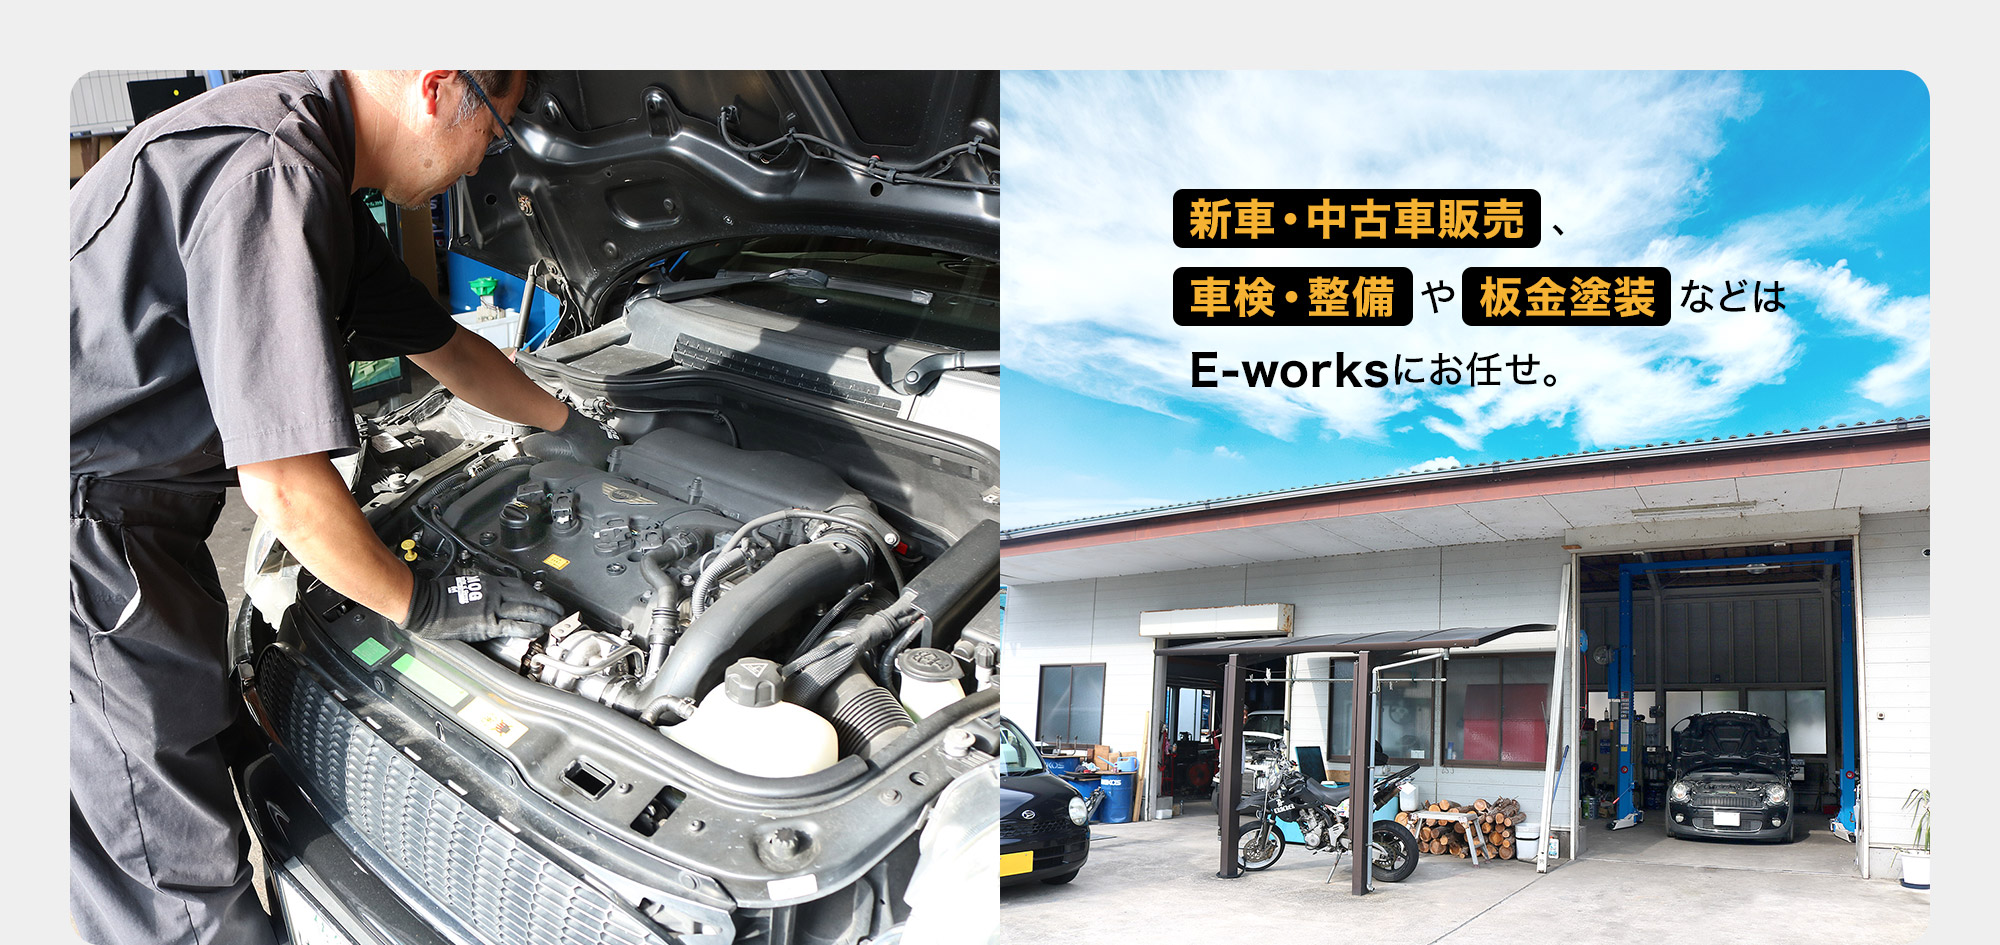 新車・中古車販売、車検・整備や板金塗装などはE-worksにお任せ。